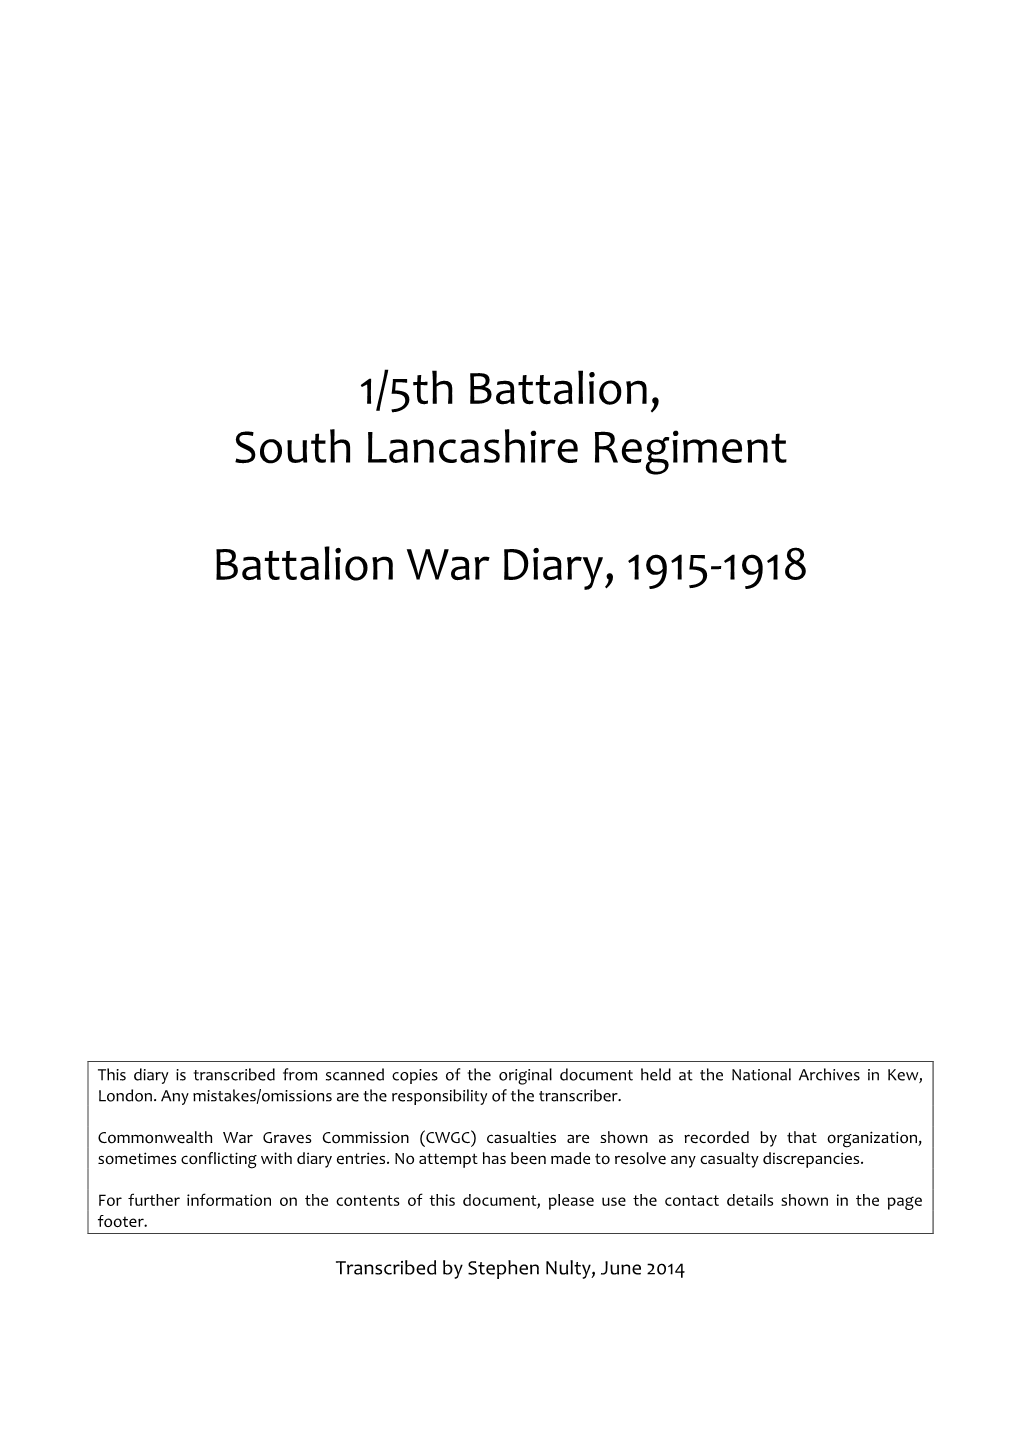 1/5Th Battalion, South Lancashire Regiment Battalion War Diary, 1915